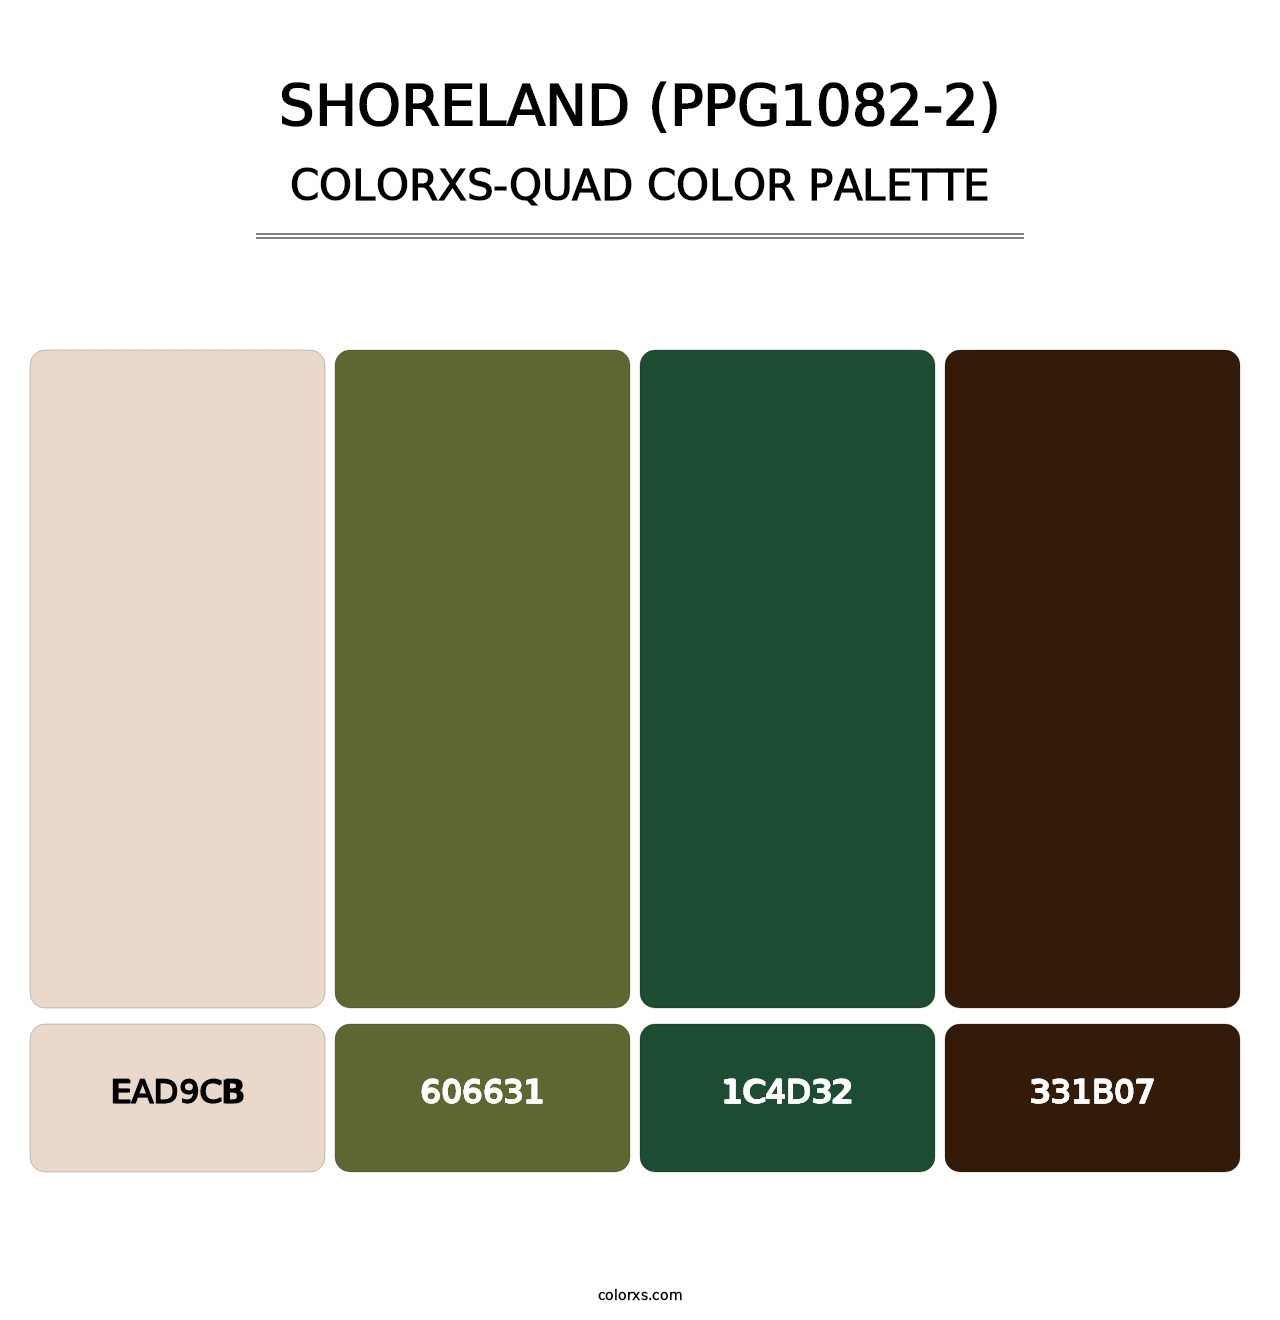 Shoreland (PPG1082-2) - Colorxs Quad Palette